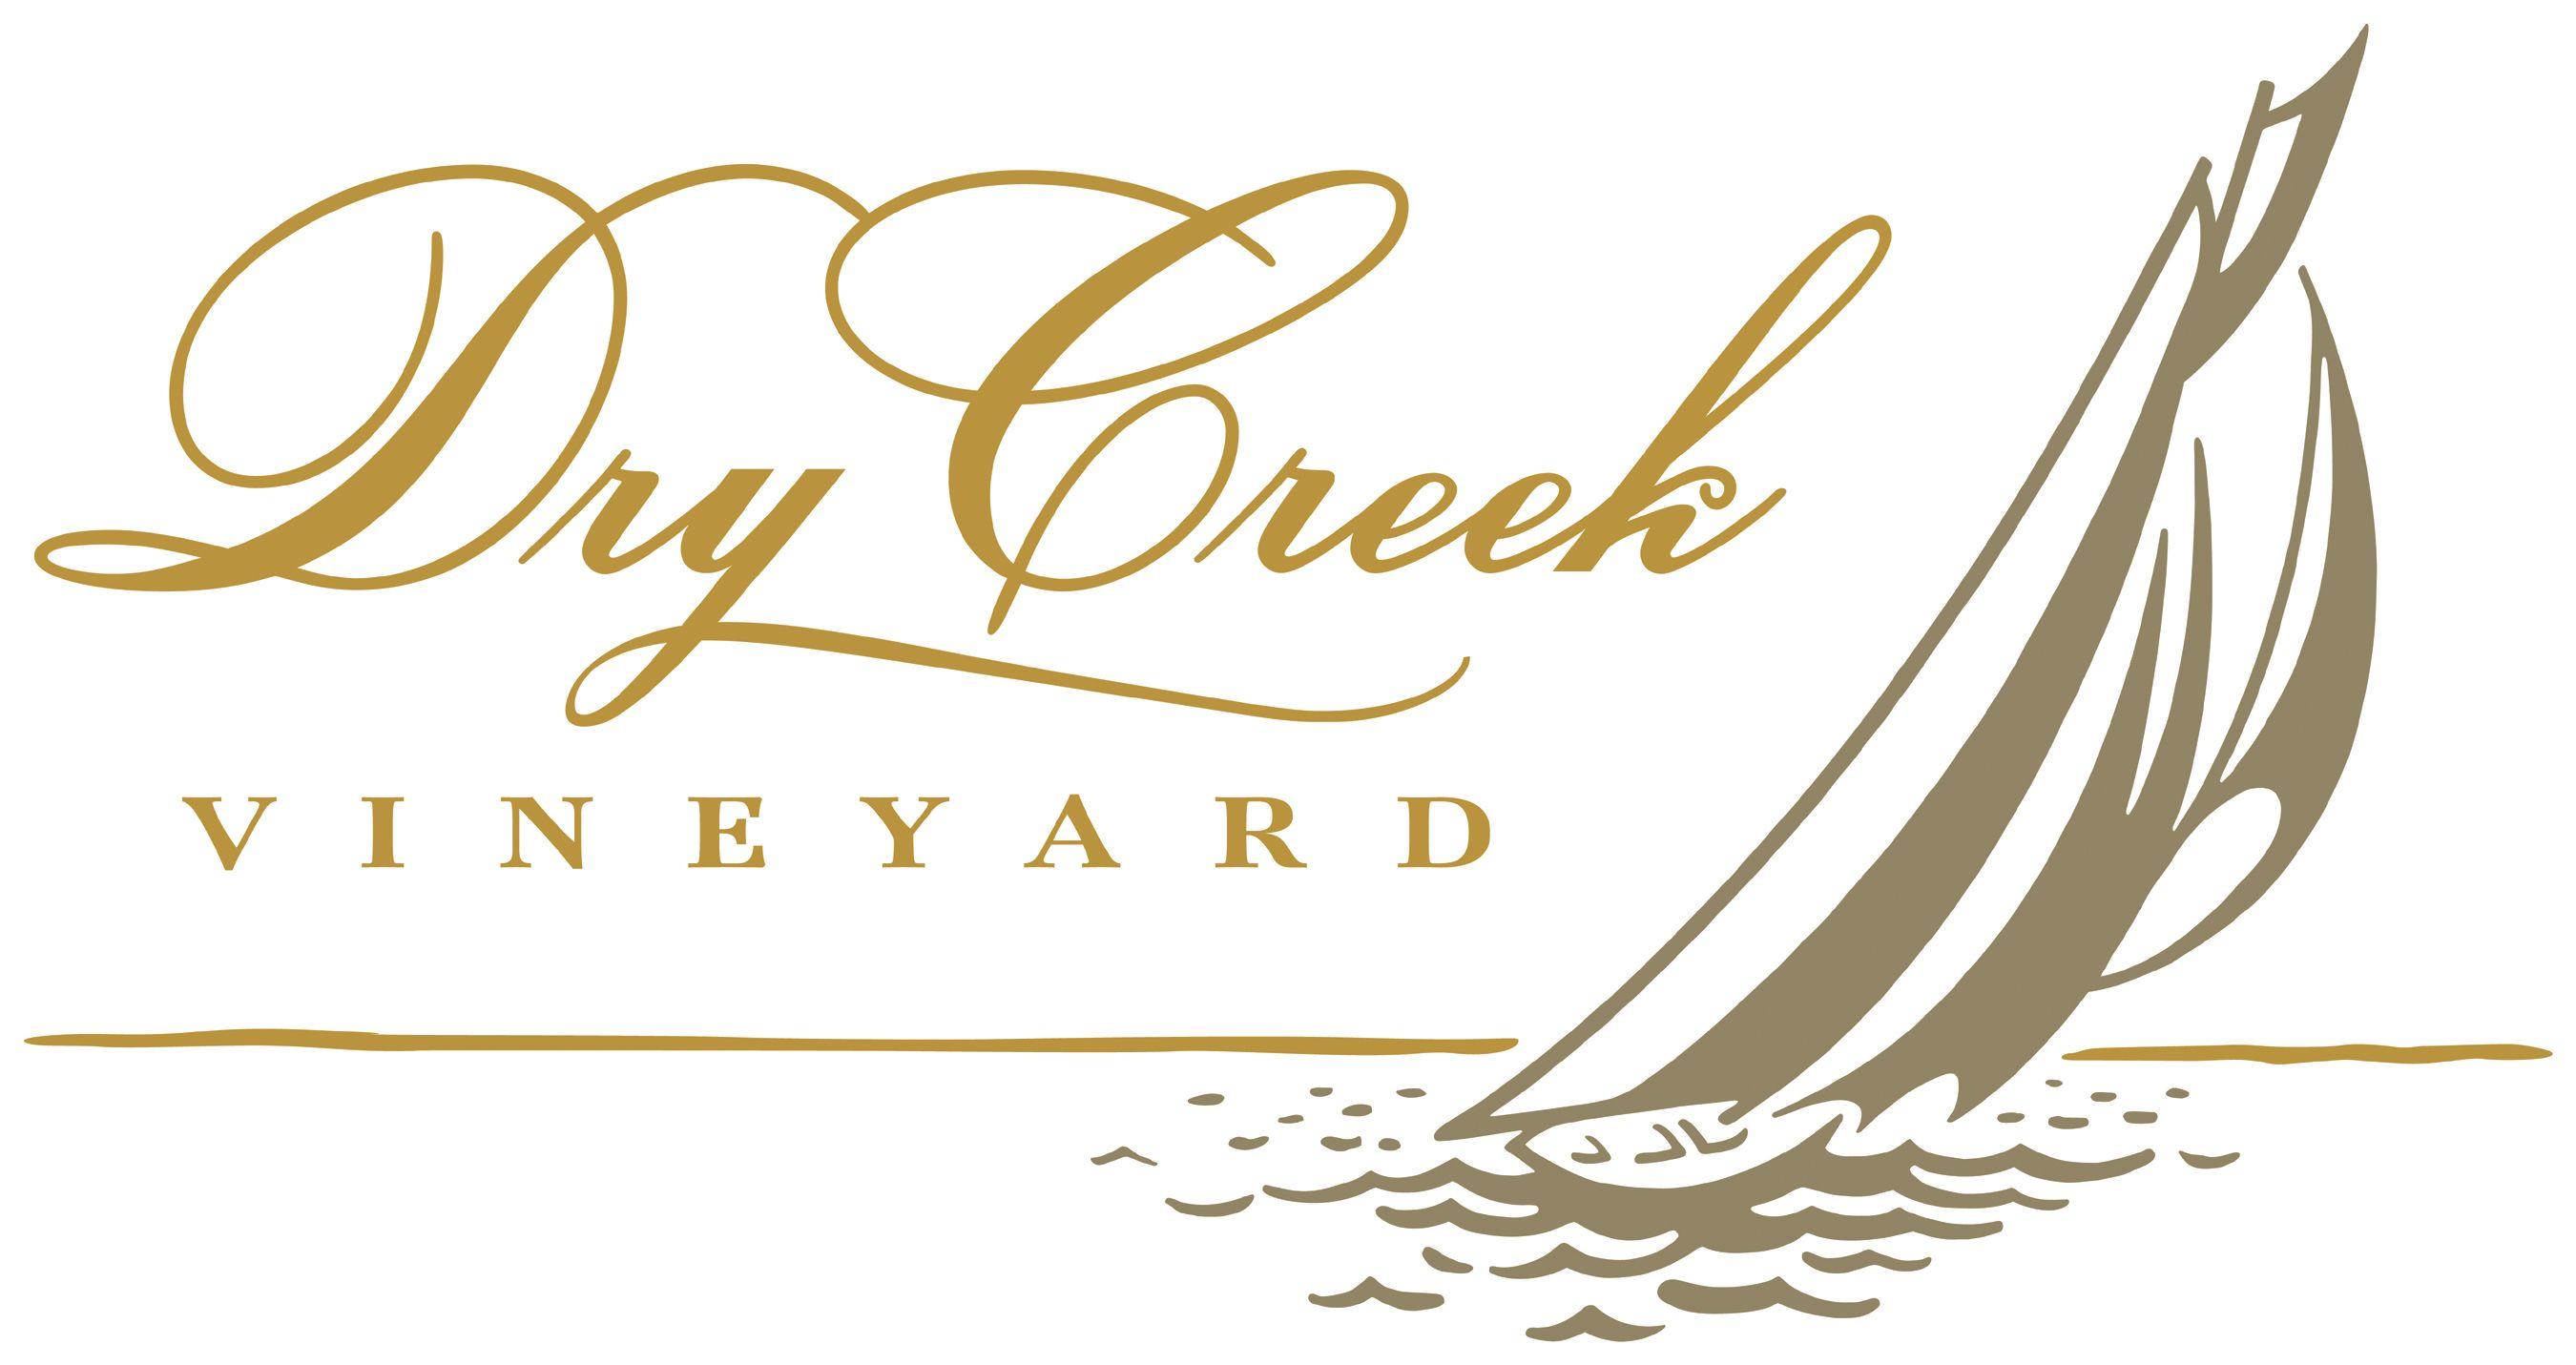 Vineyard Logo - Logos | Dry Creek Vineyard